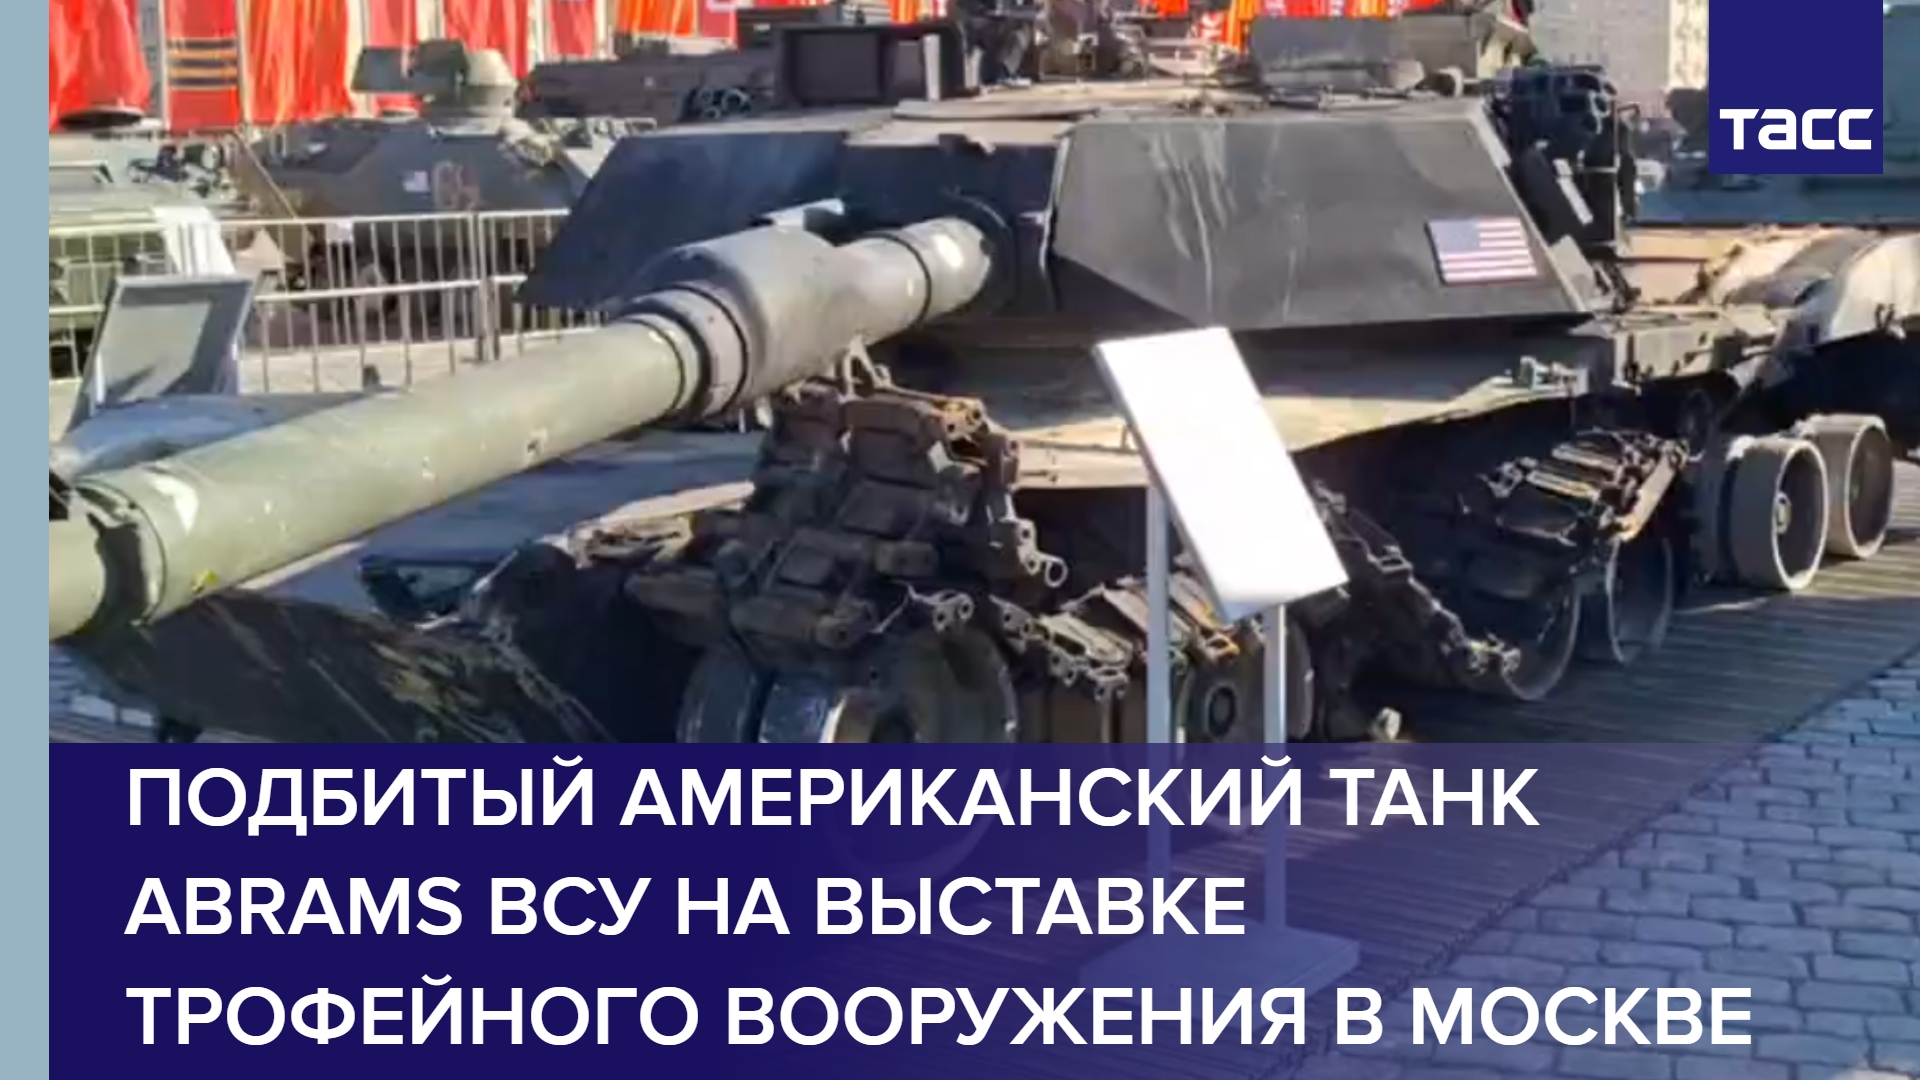 Подбитый американский танк Abrams ВСУ на выставке трофейного вооружения в Москве